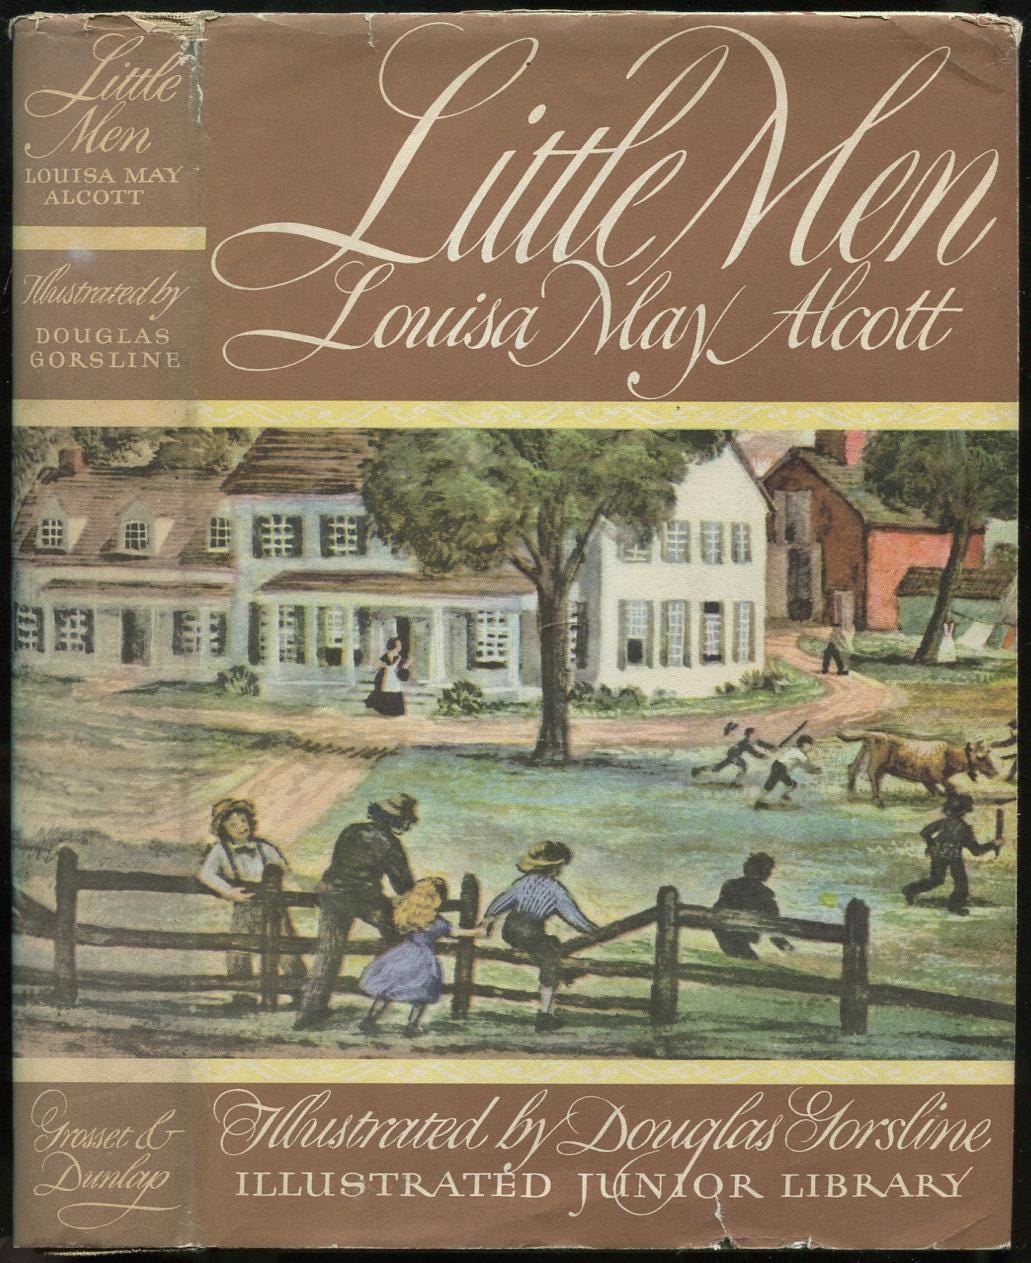 1979 cover of Alcott's Little Men